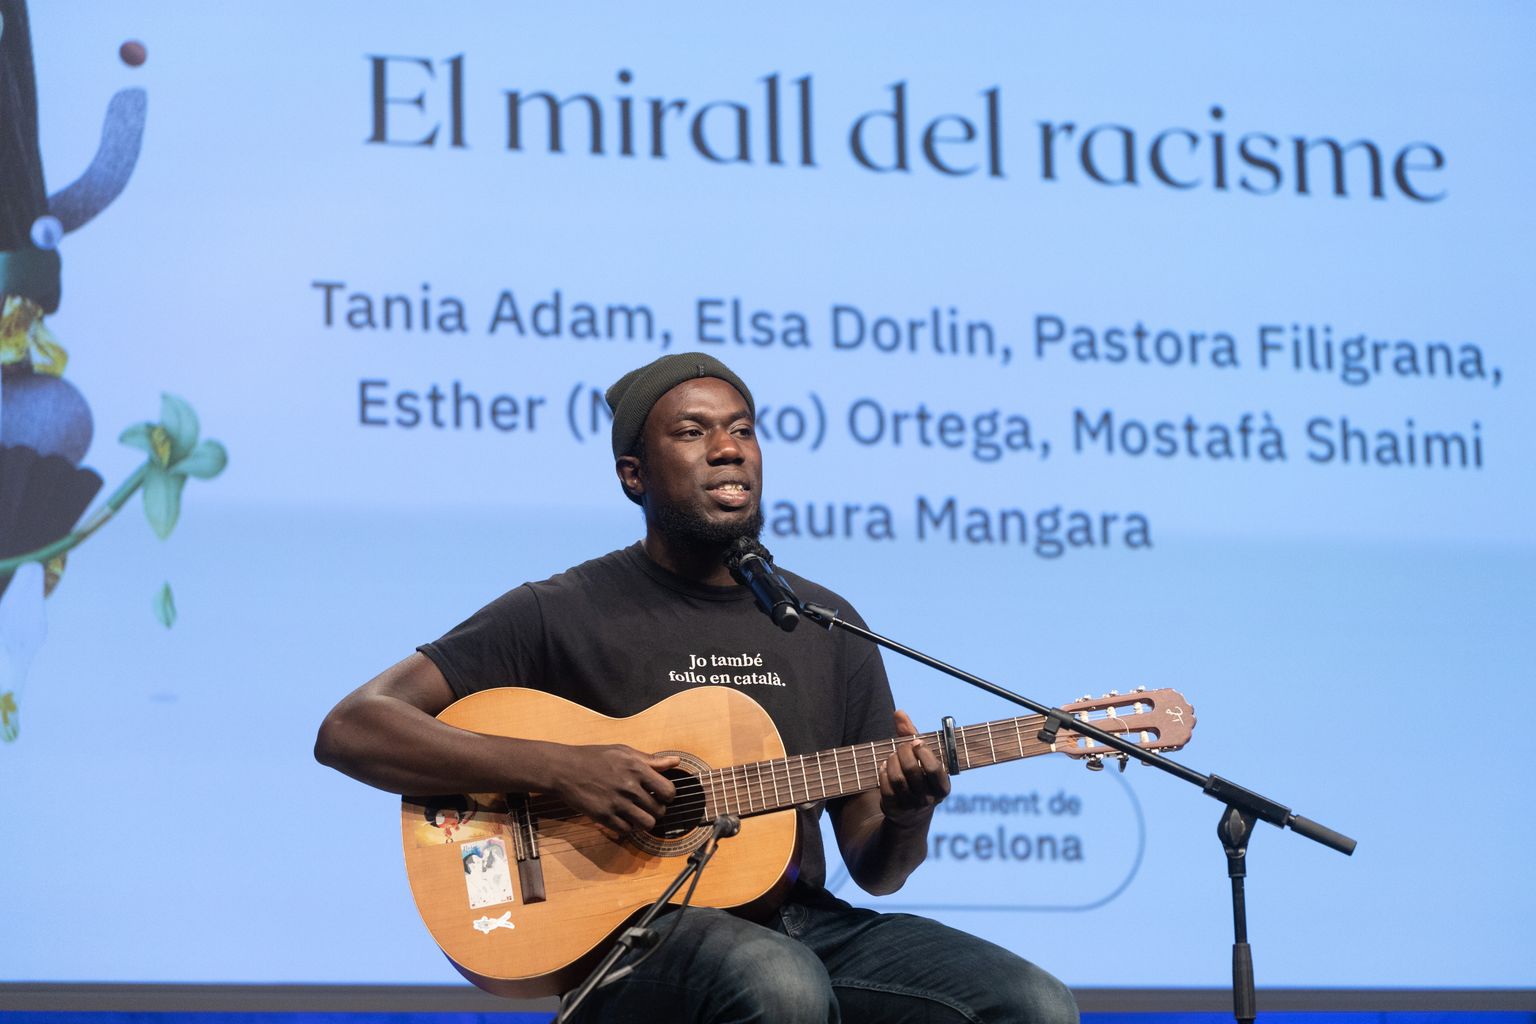 Actuación musical del artista Daura Mangara durante la mesa redonda "El espejo del racismo" en la plaza de Joan Coromines